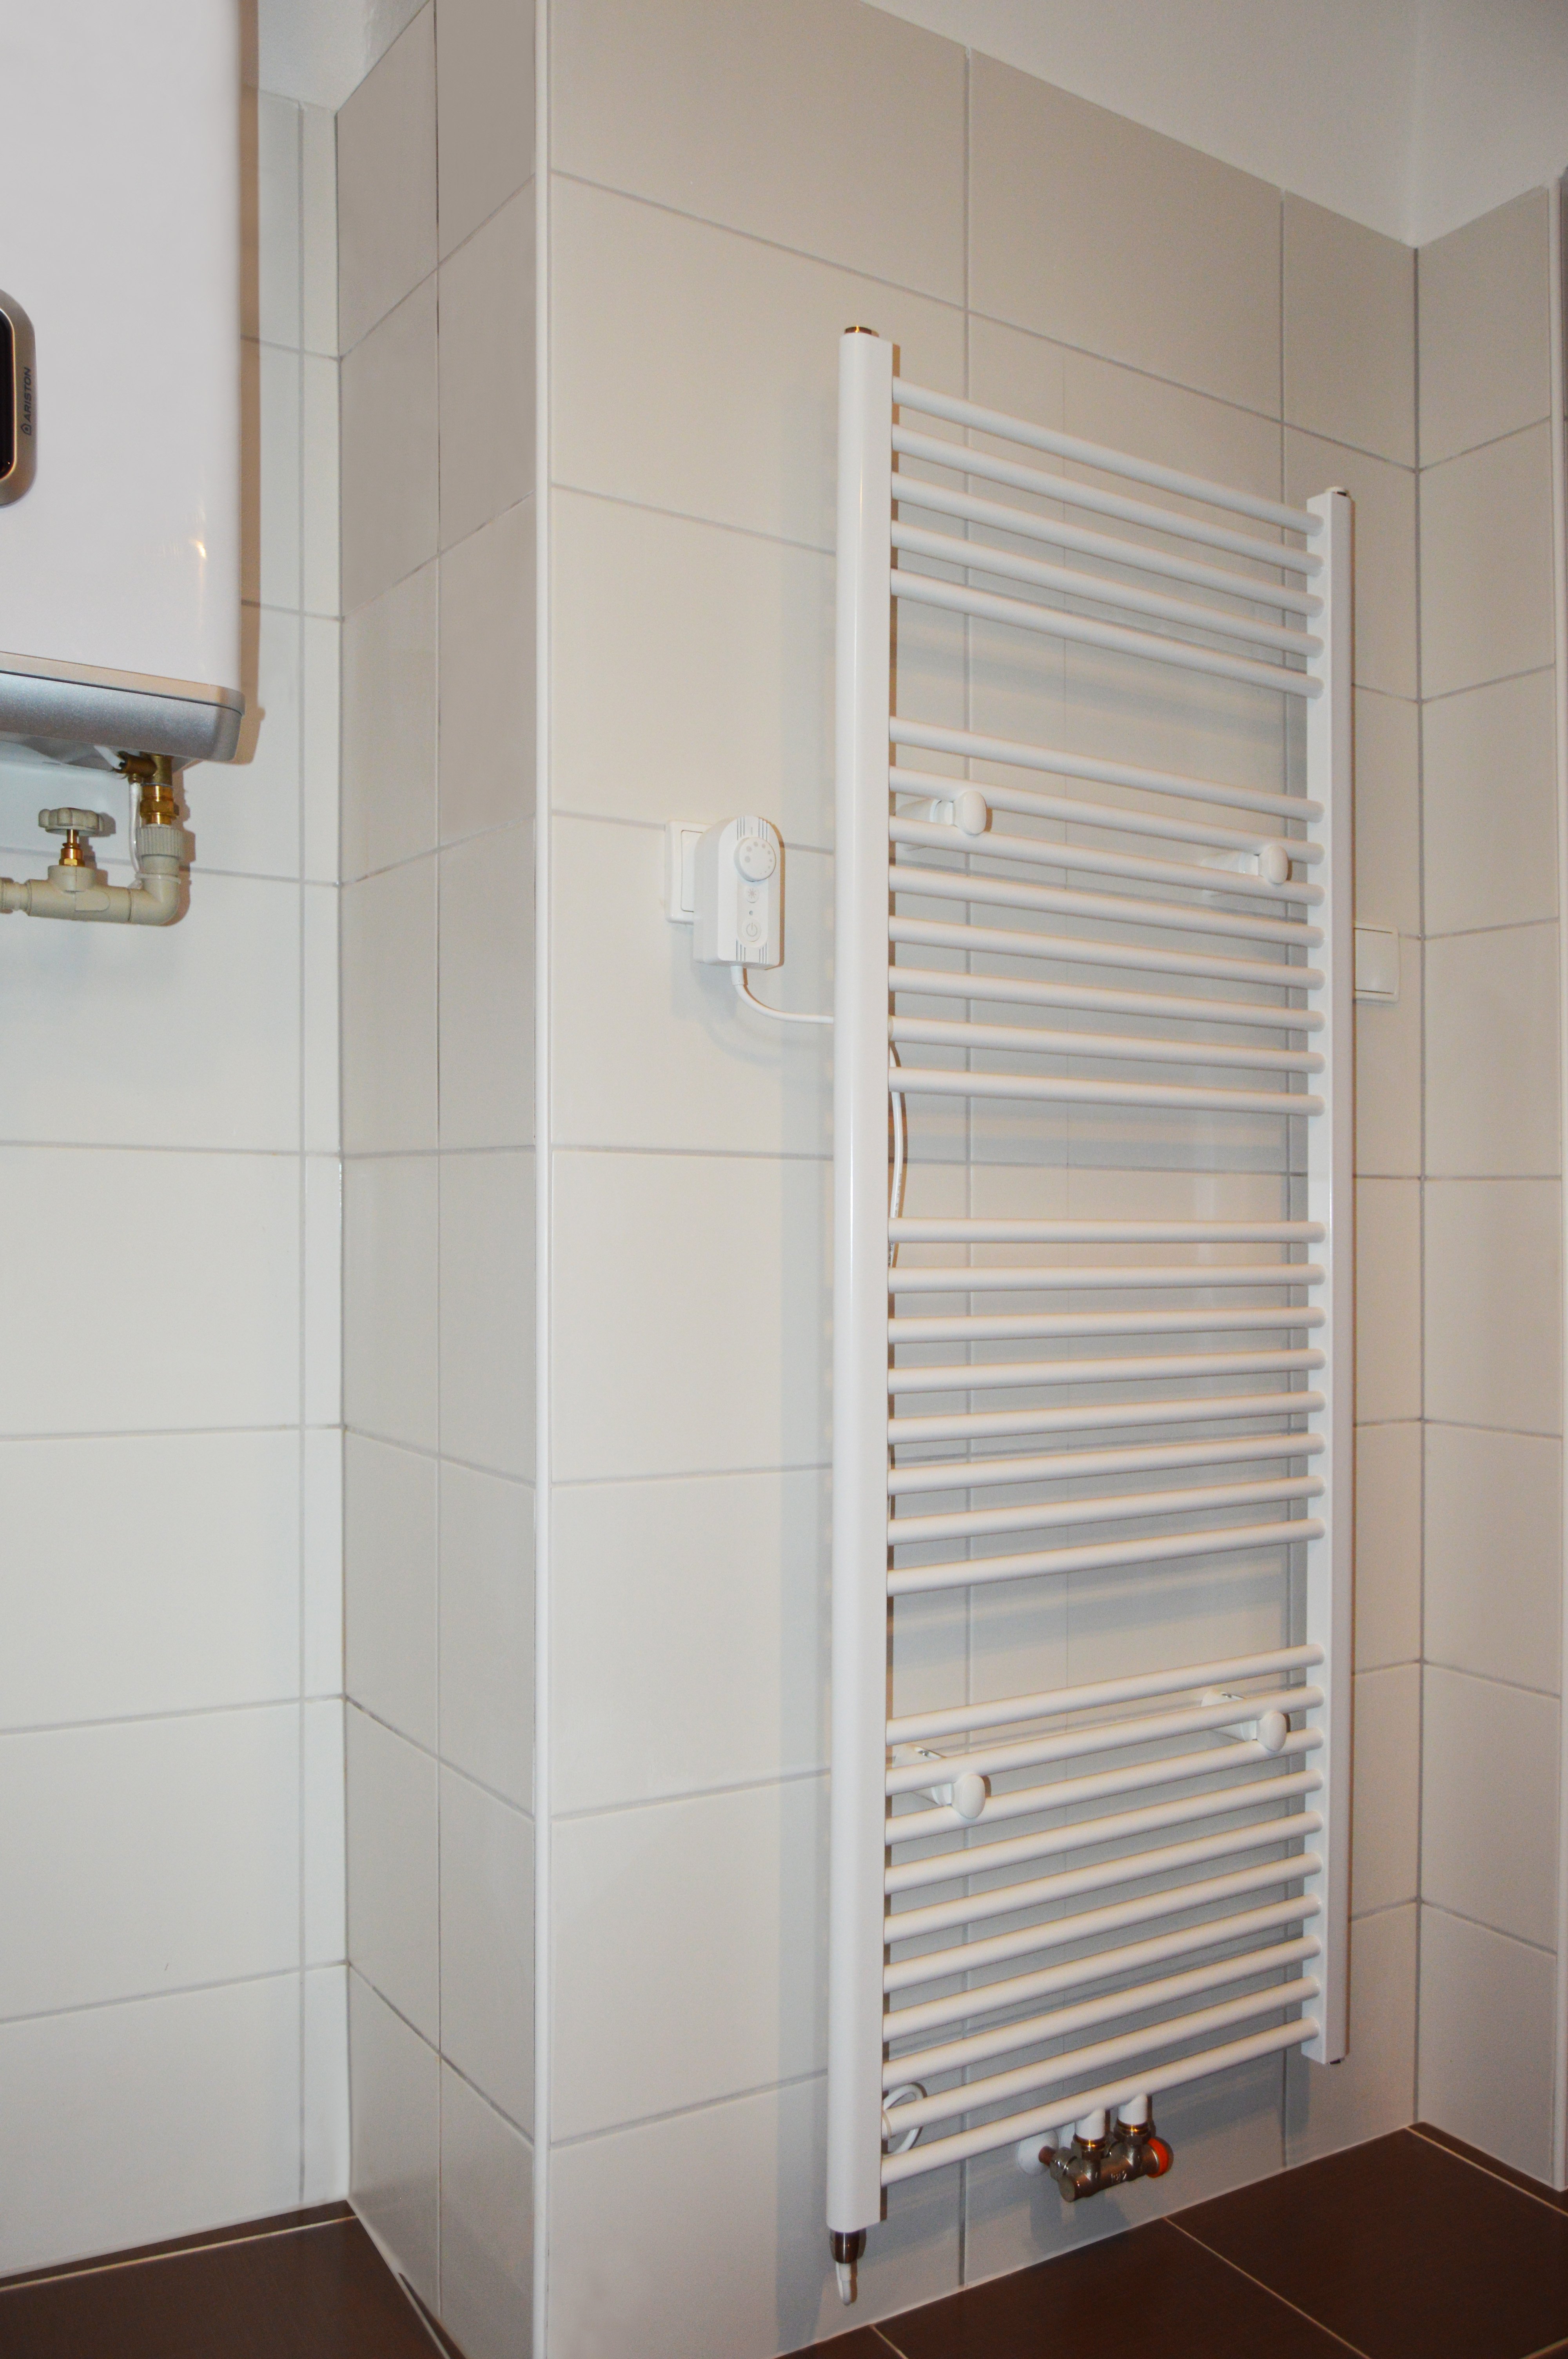 Rekonstrukce koupelny - Zásobníkový elektrický ohřívač vody Ariston Velis VLS 100 je možné instalovat ve svislé i vodorovné pozici a má ECO funkci pro úsporu energie